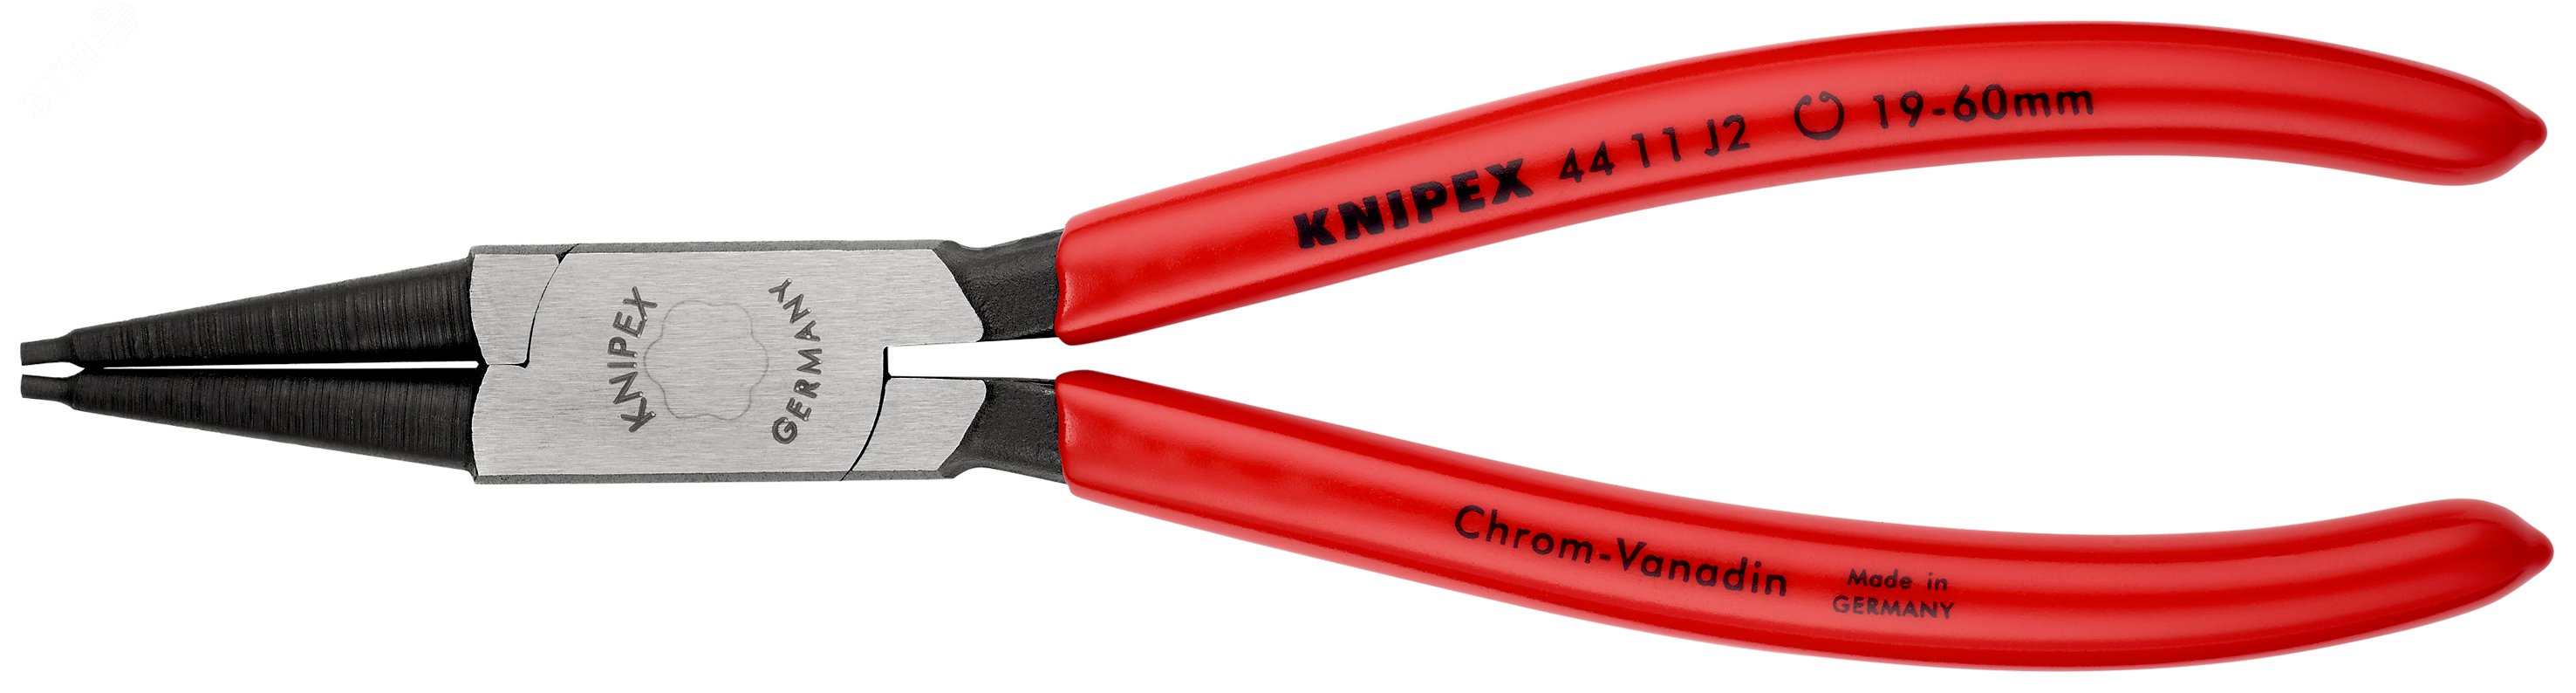 Щипцы для внутренних стопорных колец прямые губки посадочный размер 19-60мм диаметр наконечников 18мм L=180мм Cr-V обливные рукоятки блистер цвет черный KN-4411J2SB KNIPEX - превью 3